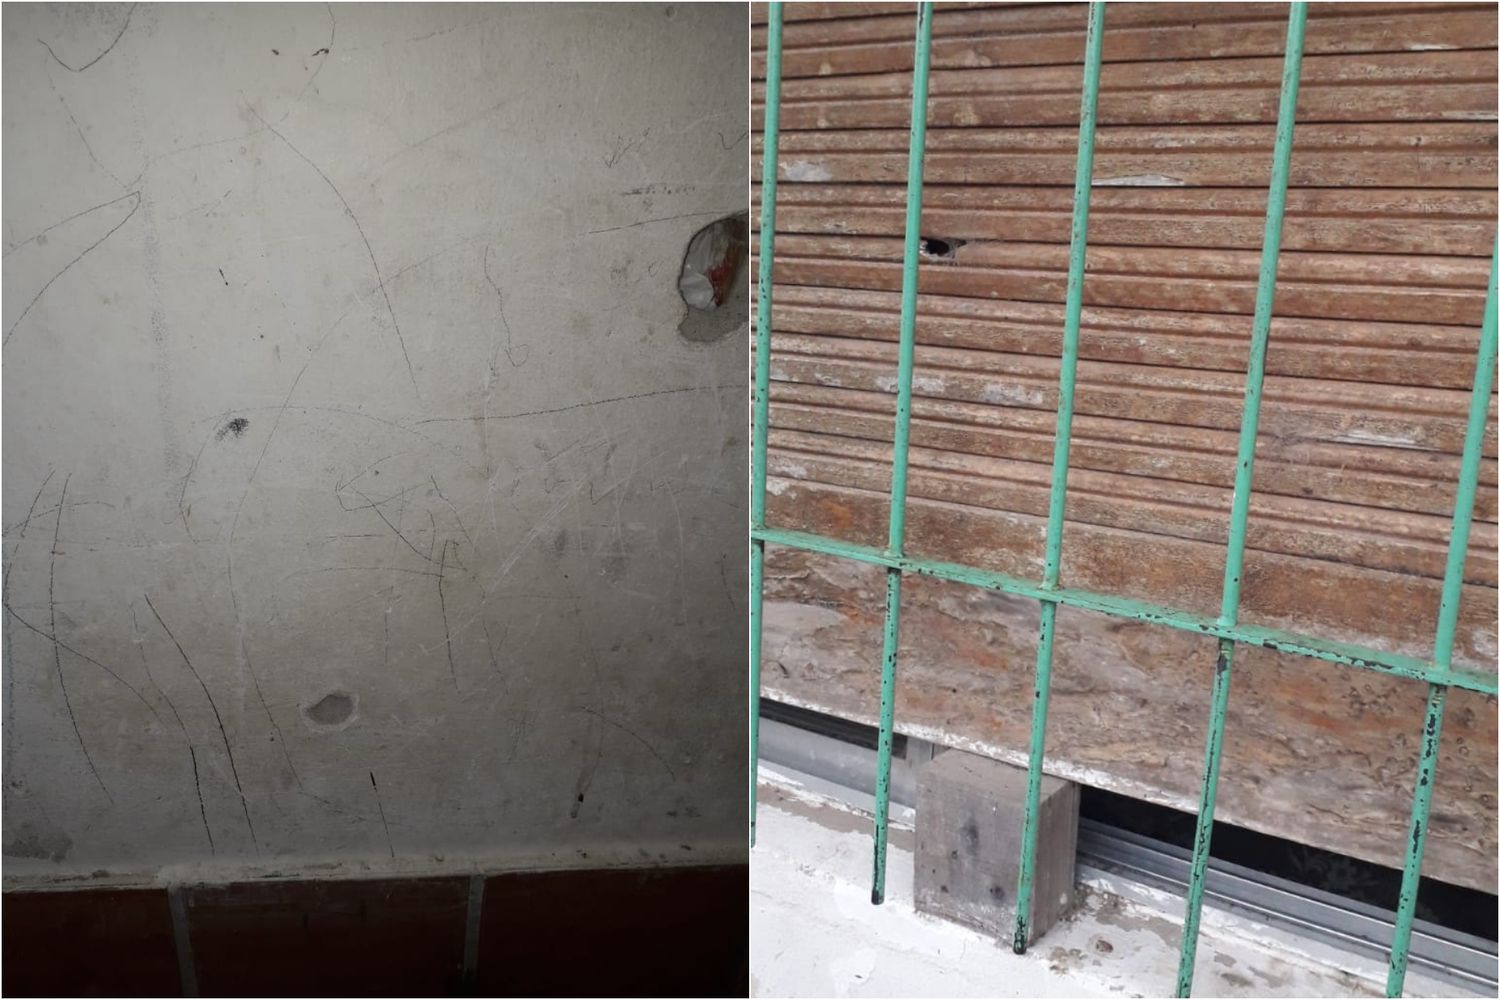 A la izquierda, el impacto de bala en la pared; a la derecha, en la ventana.